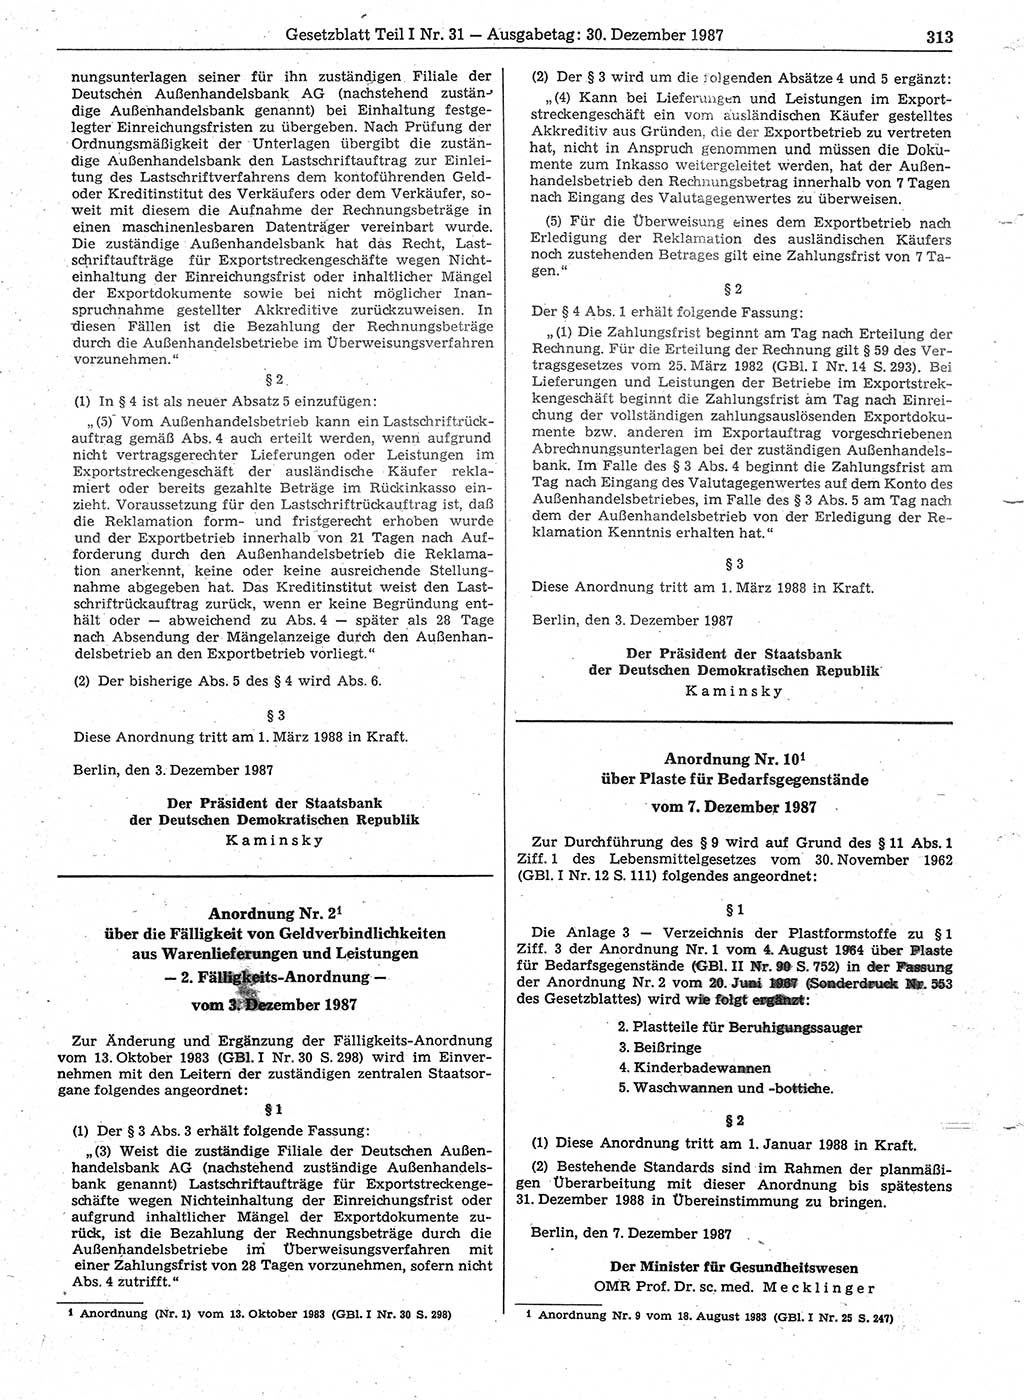 Gesetzblatt (GBl.) der Deutschen Demokratischen Republik (DDR) Teil Ⅰ 1987, Seite 313 (GBl. DDR Ⅰ 1987, S. 313)